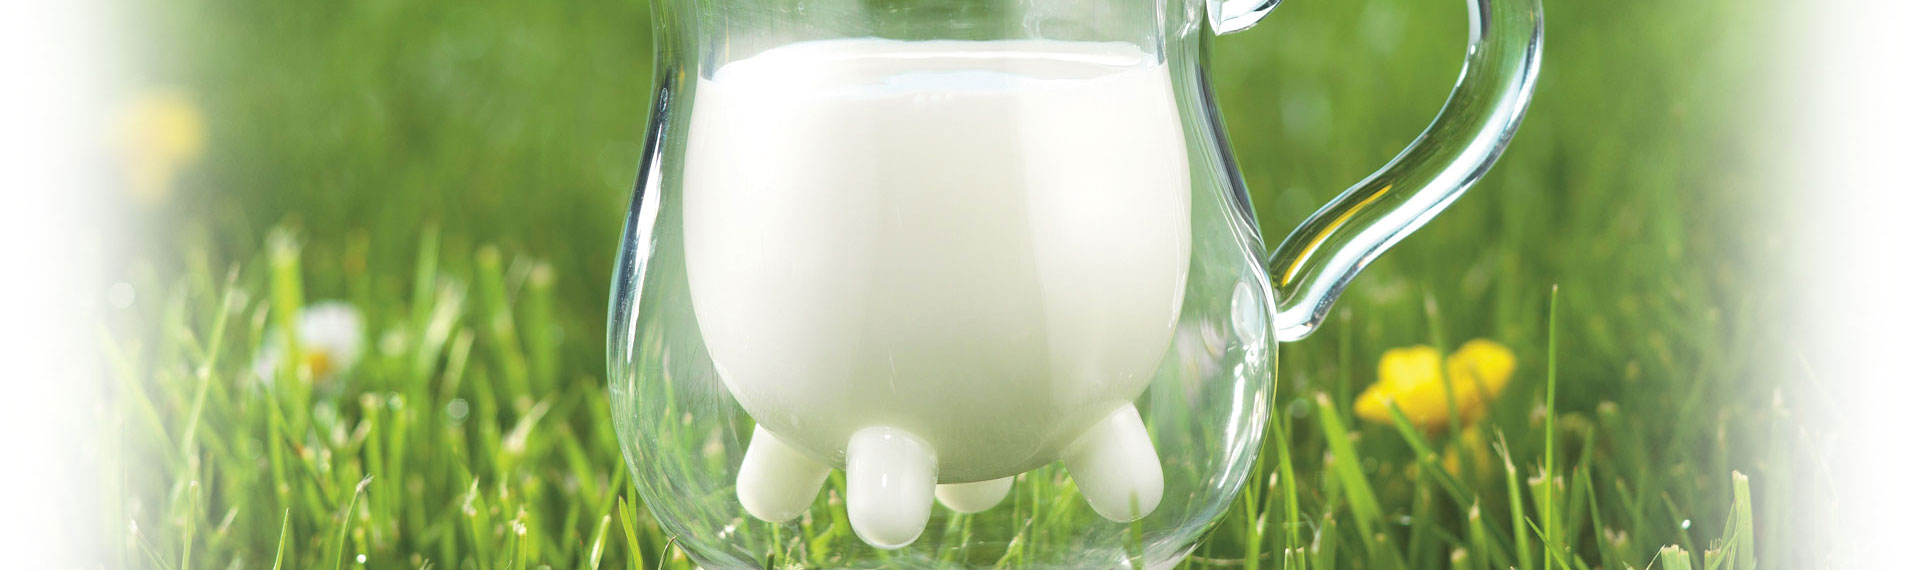 Laiterie SLVA - Emballage, sécurité et qualité du lait